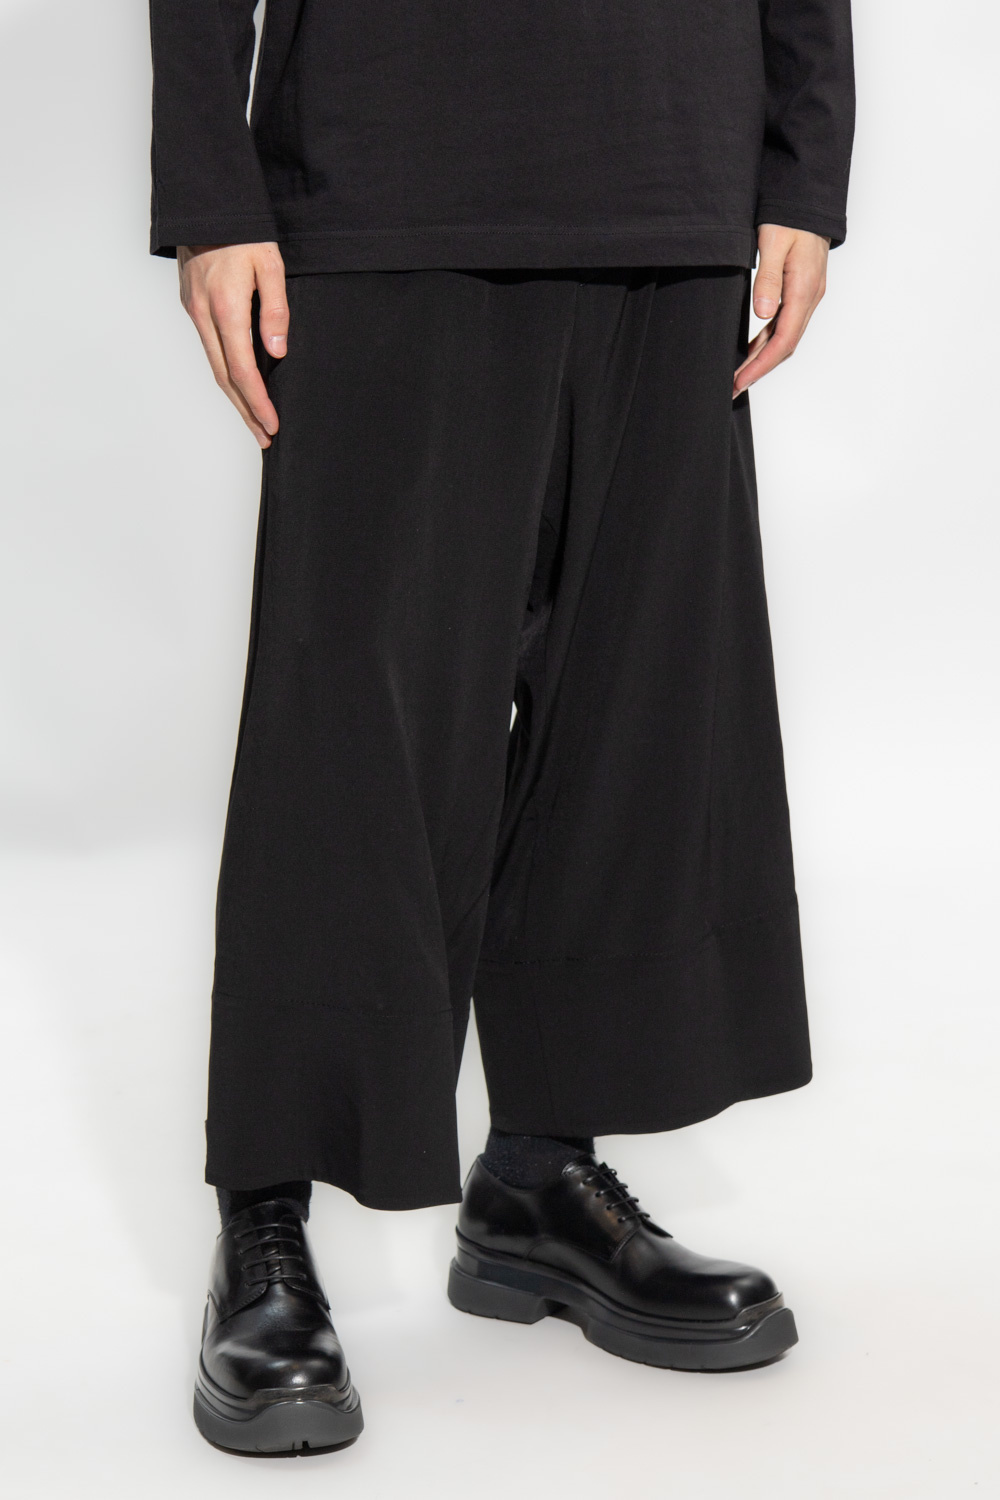 Yohji Yamamoto Luc trousers with pockets